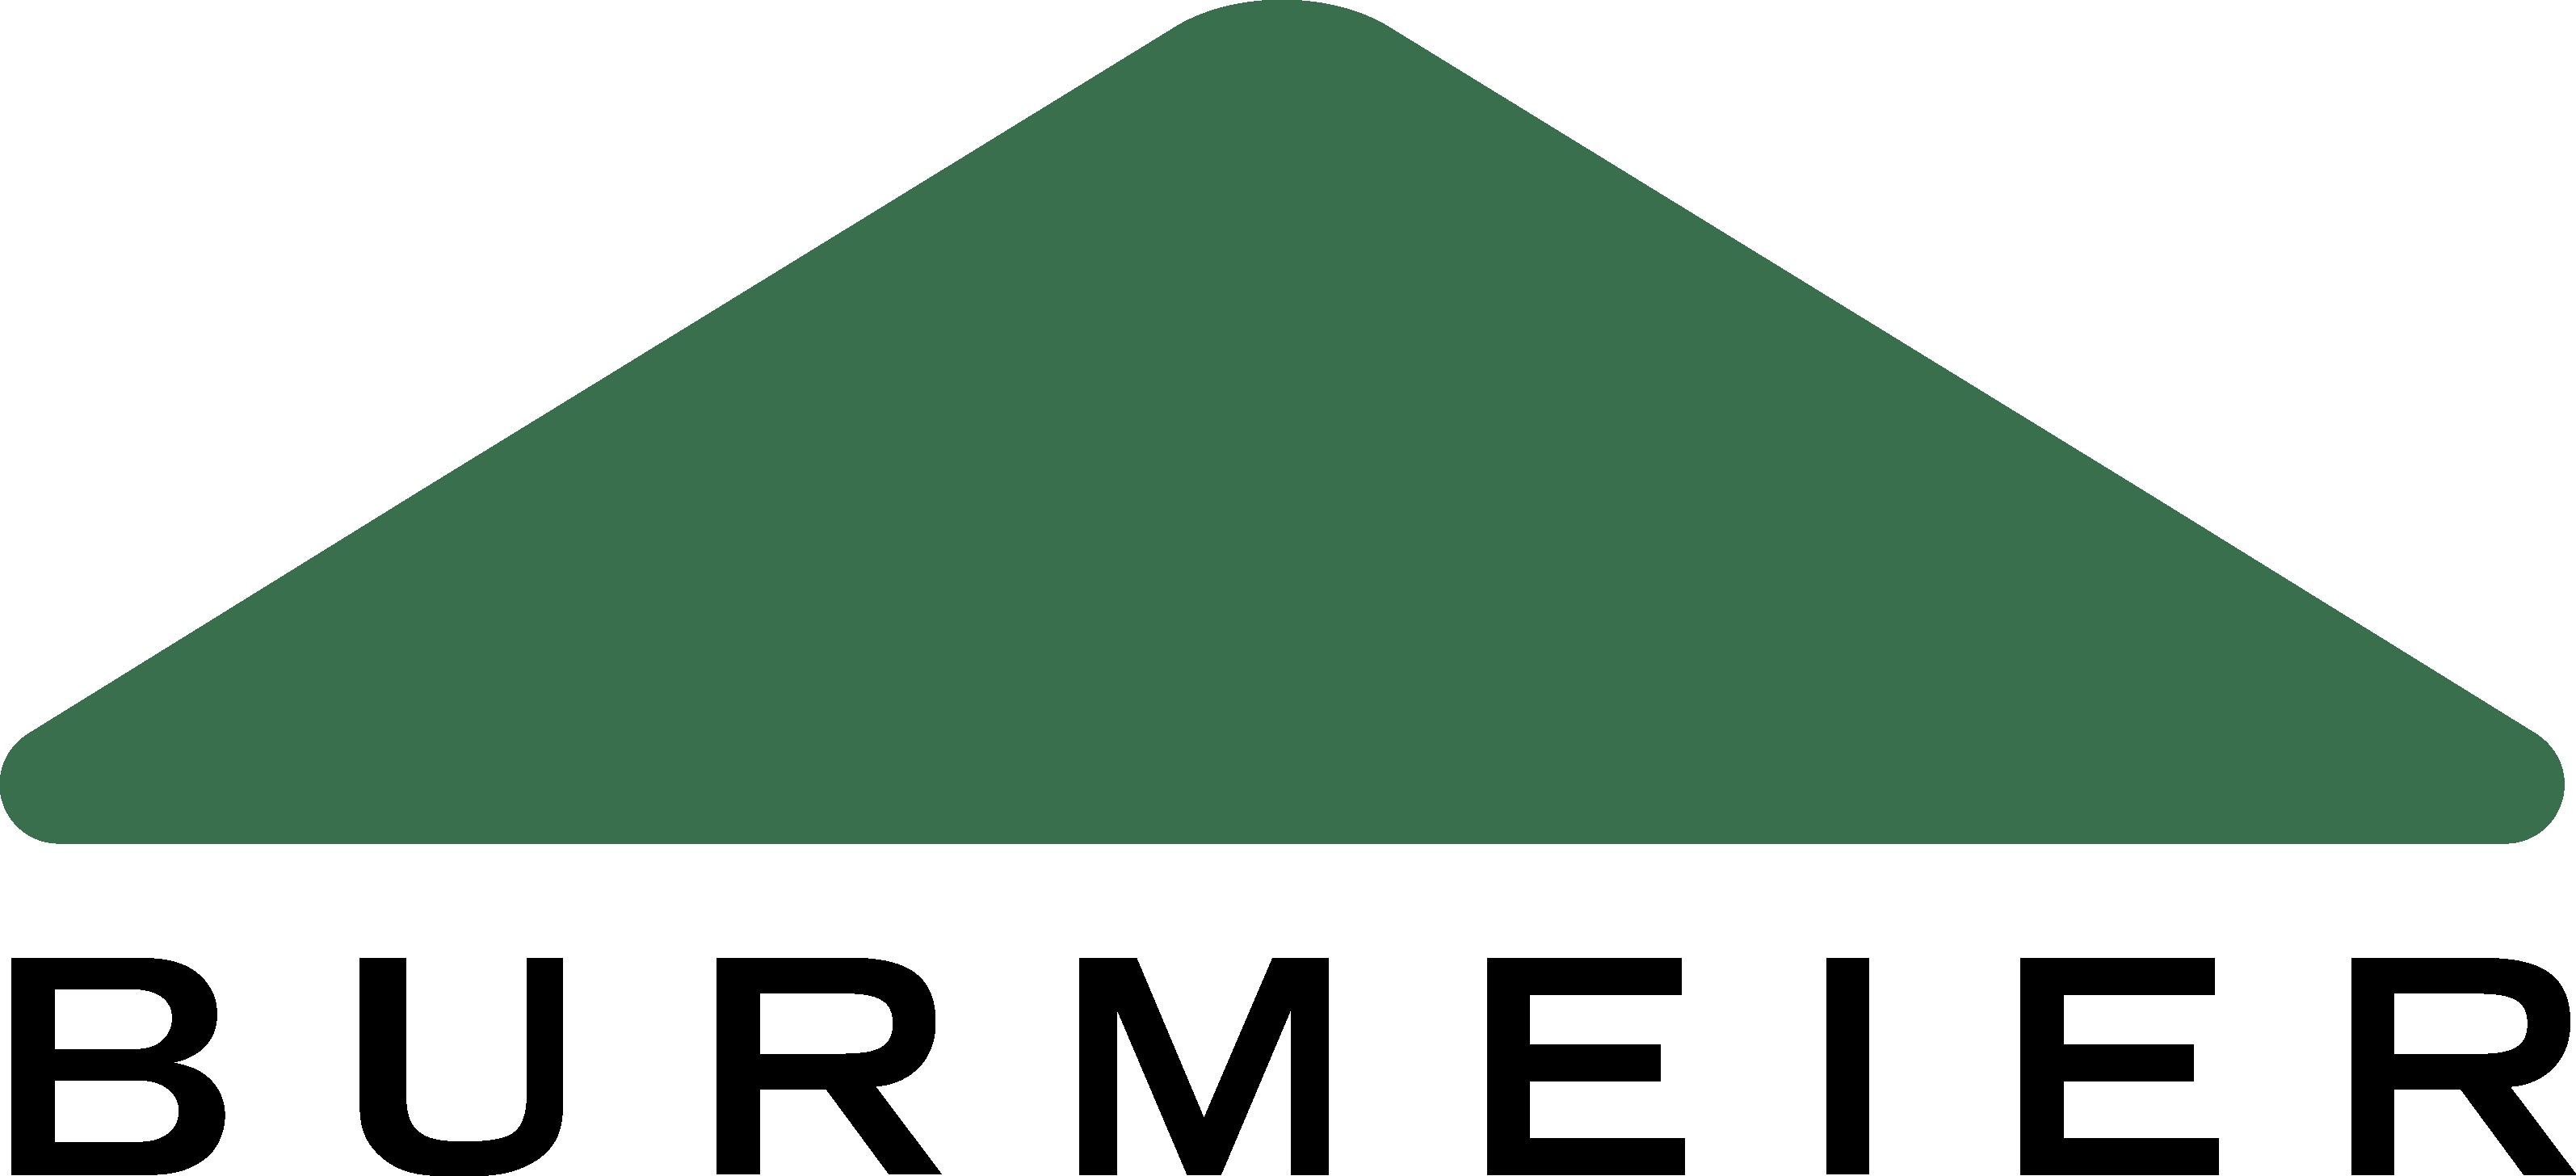 Bildergebnis für burmeier logo